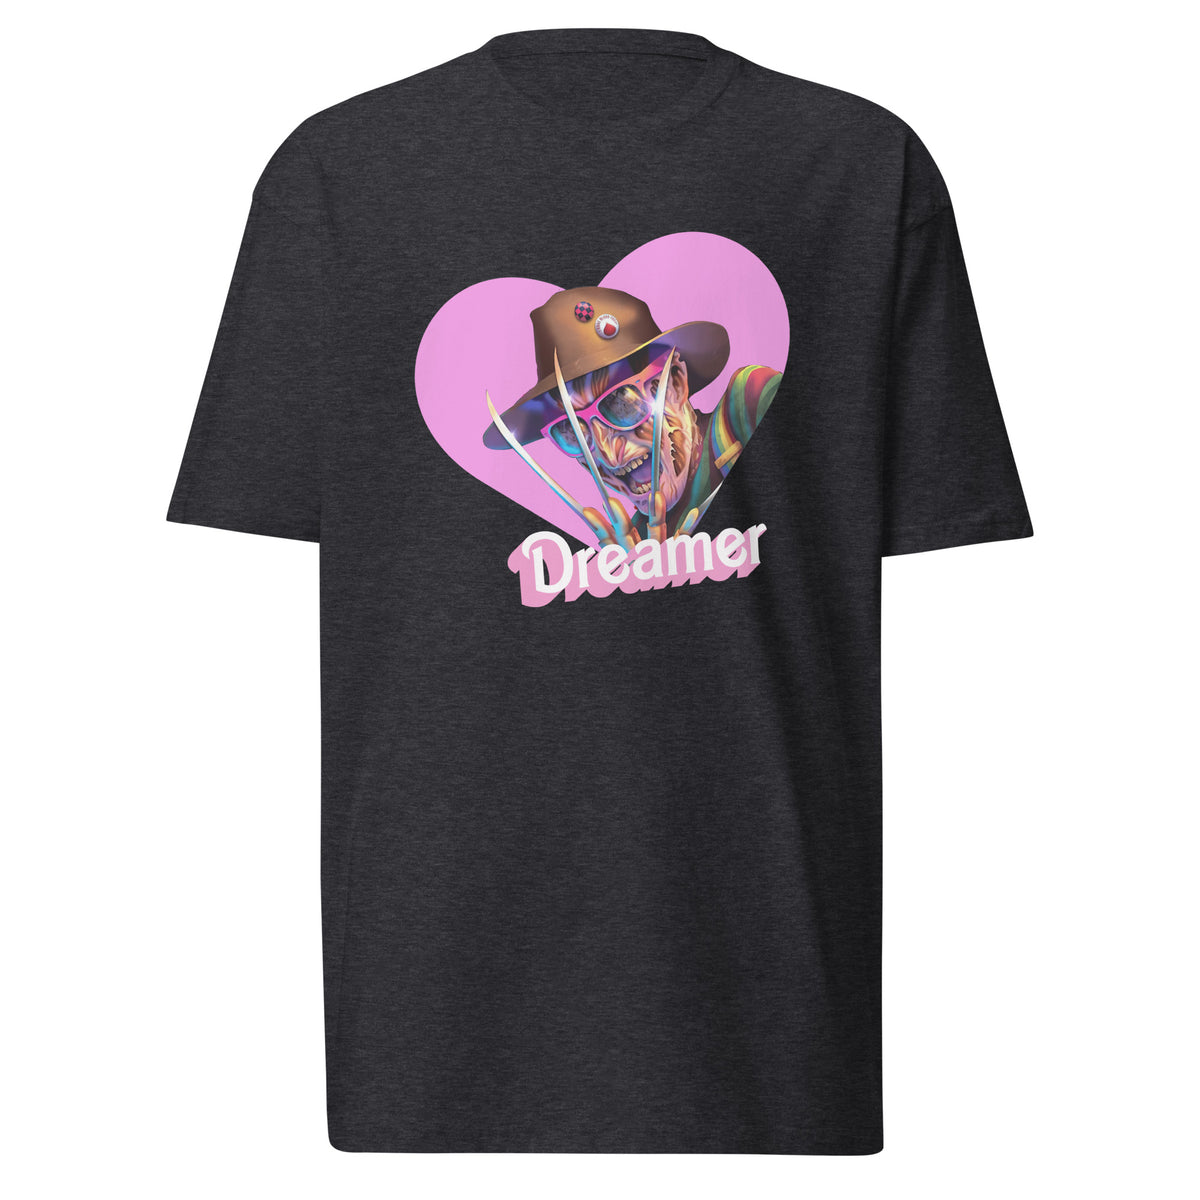 Men’s Dreamer (Freddy Krueger) T-Shirt